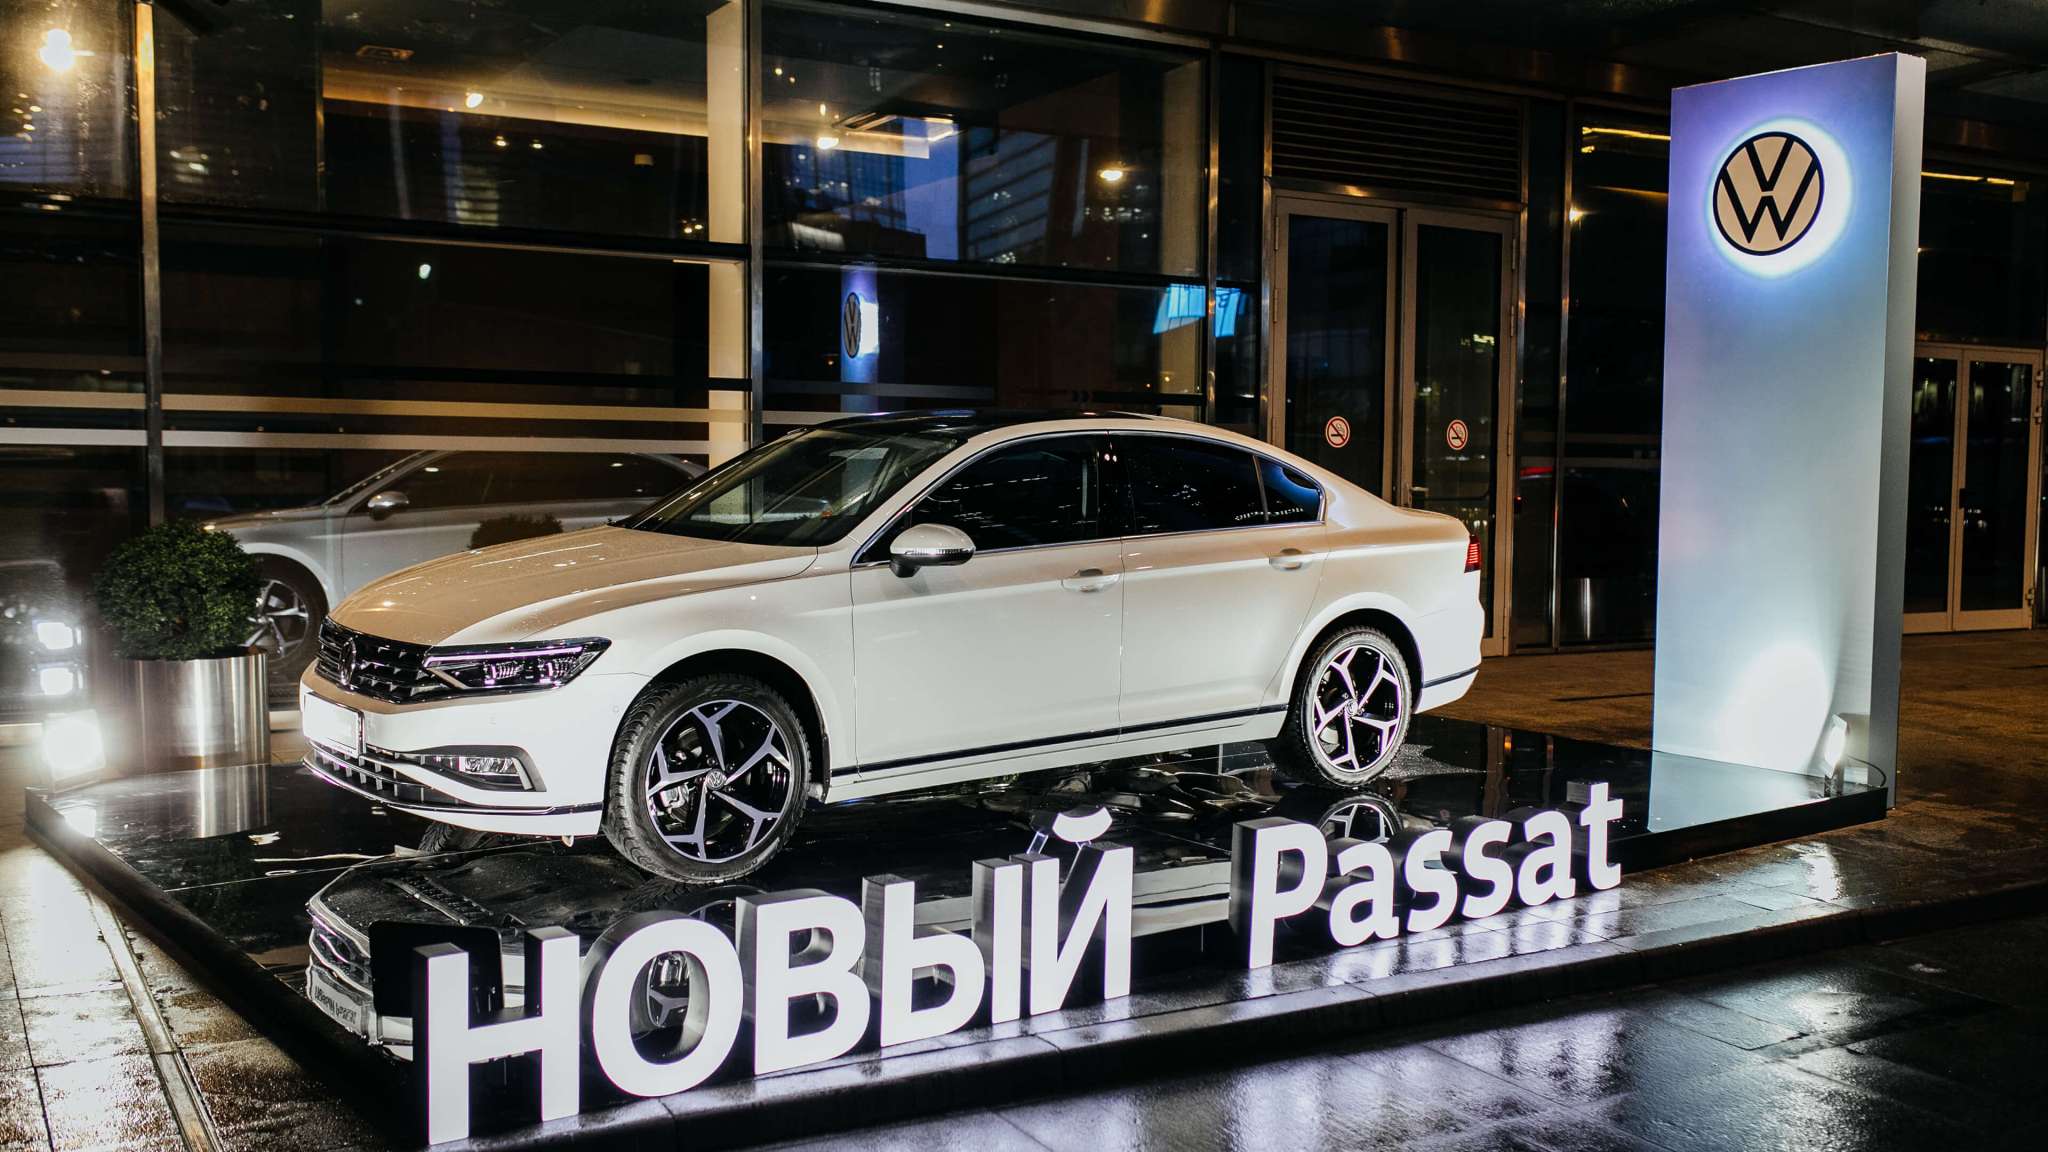 Новый Volkswagen Passat представлен на Балу немецкой экономики в Москве